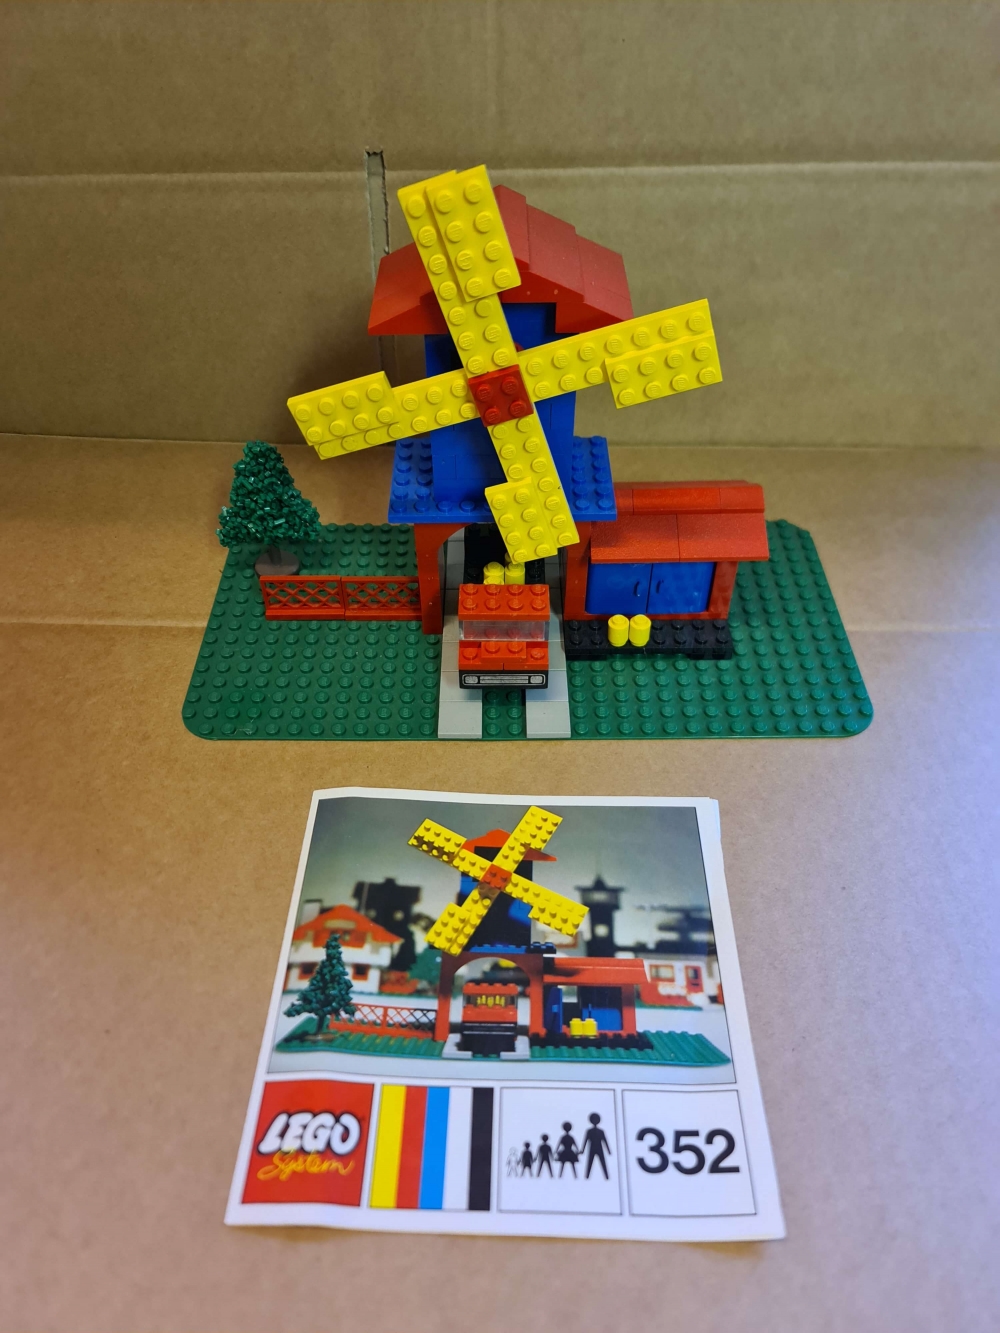 Sett 352 fra Lego Legoland serien.
Hlet komplett med riktig tre. Manual med men litt løs. Noe nyanseforskjeller på grå fliser ellers meget pent.